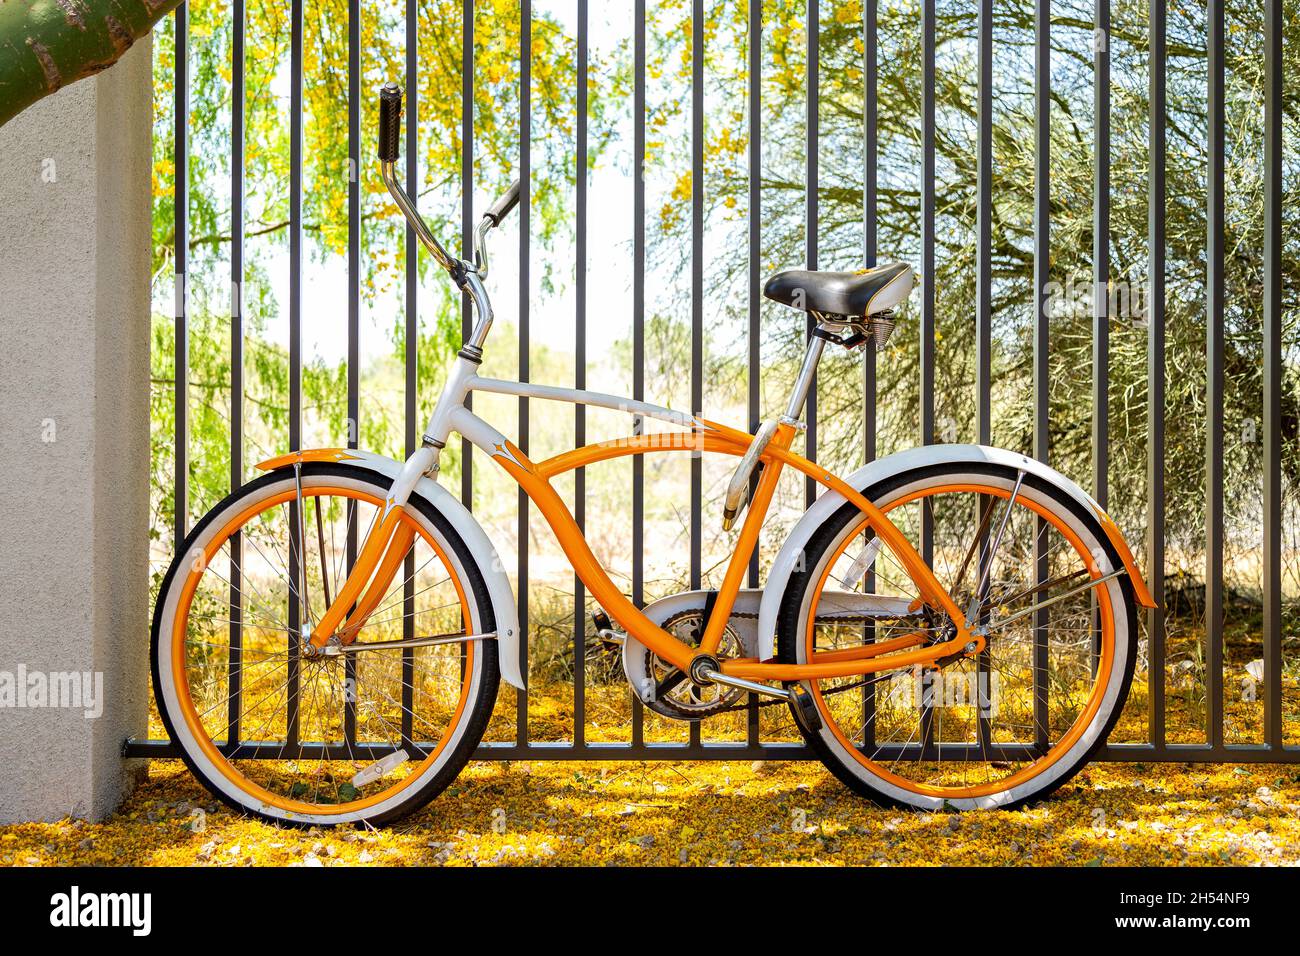 Retro-Stil Fahrrad in der Wüste Südwesten auf einem Teppich aus Blumen. Orangefarbenes und weißes Fahrrad im Vintage-Stil, das in voller Blüte unter dem palo verde Baum eingezäunt ist. Stockfoto